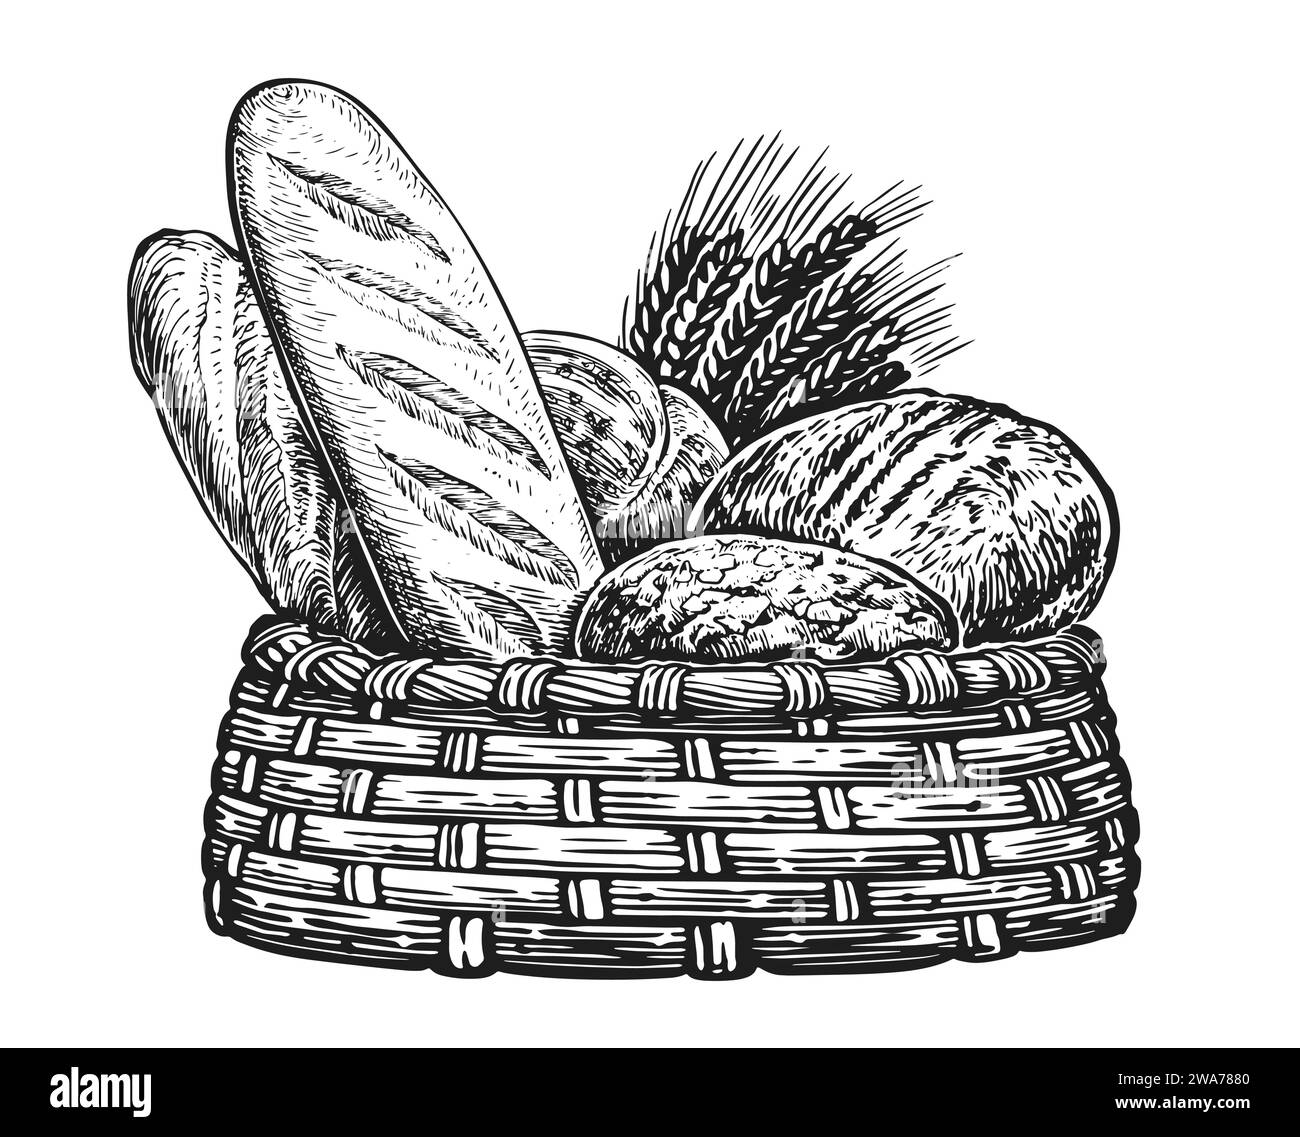 Brote und Ähren aus Weizen skizzieren Illustration. Frische Backwaren im Korb, Vintage Stock Vektor